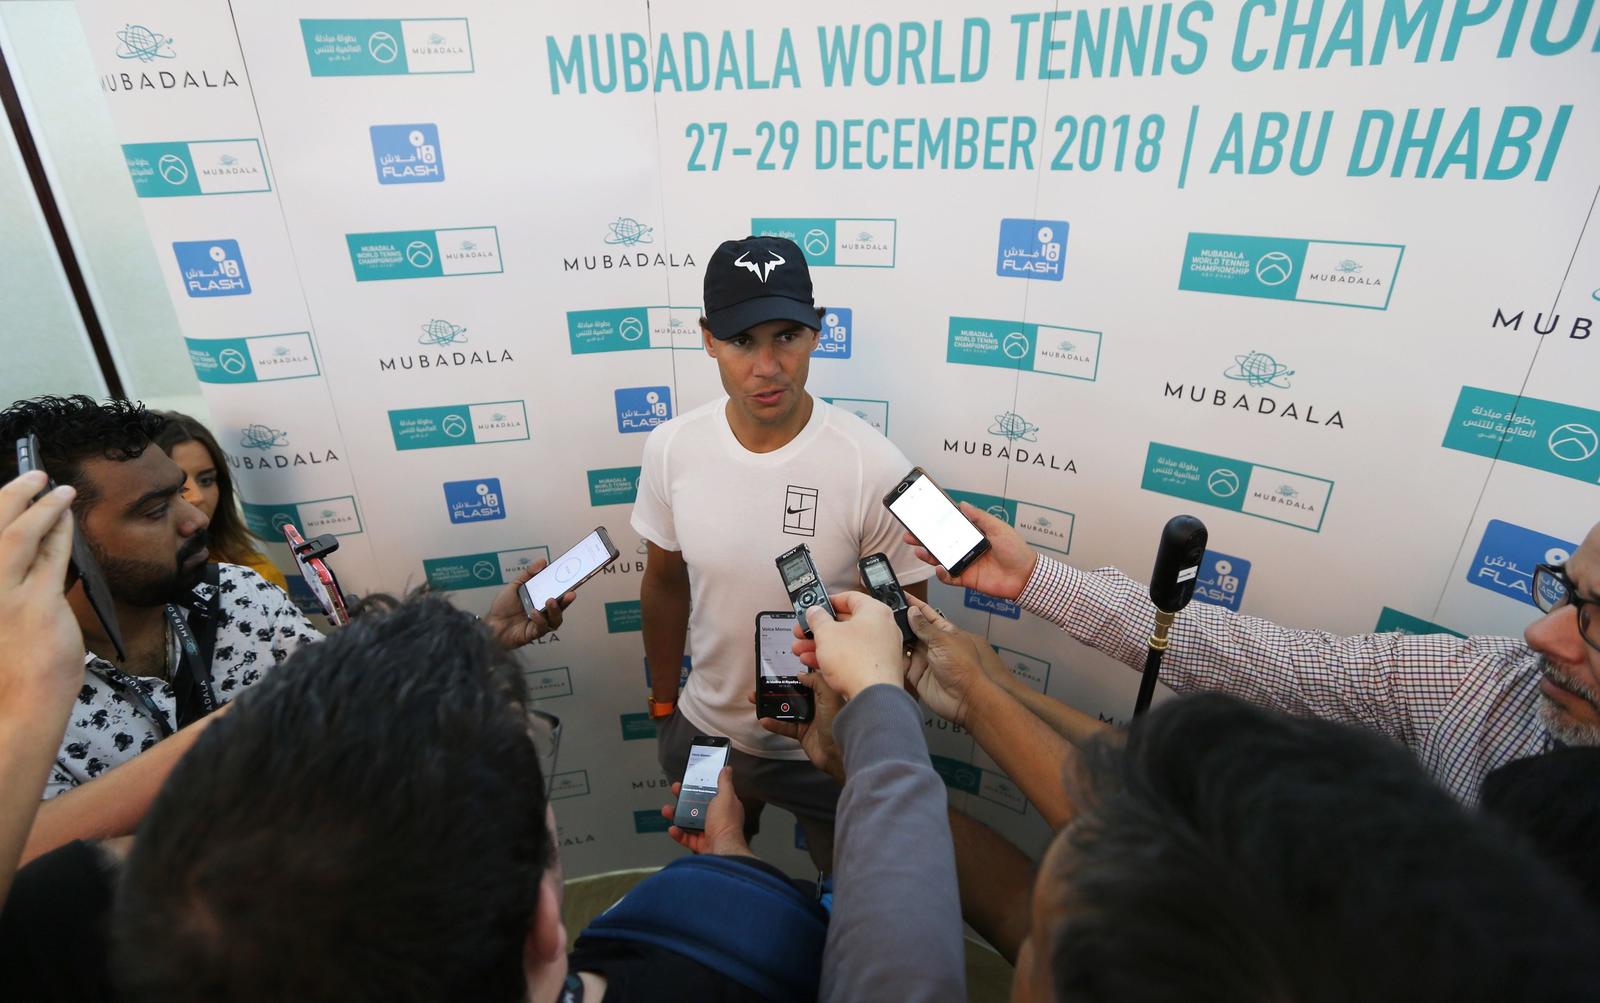 El español Rafael Nadal atendía a la prensa durante el Mubadala World Tennis Championship ayer.